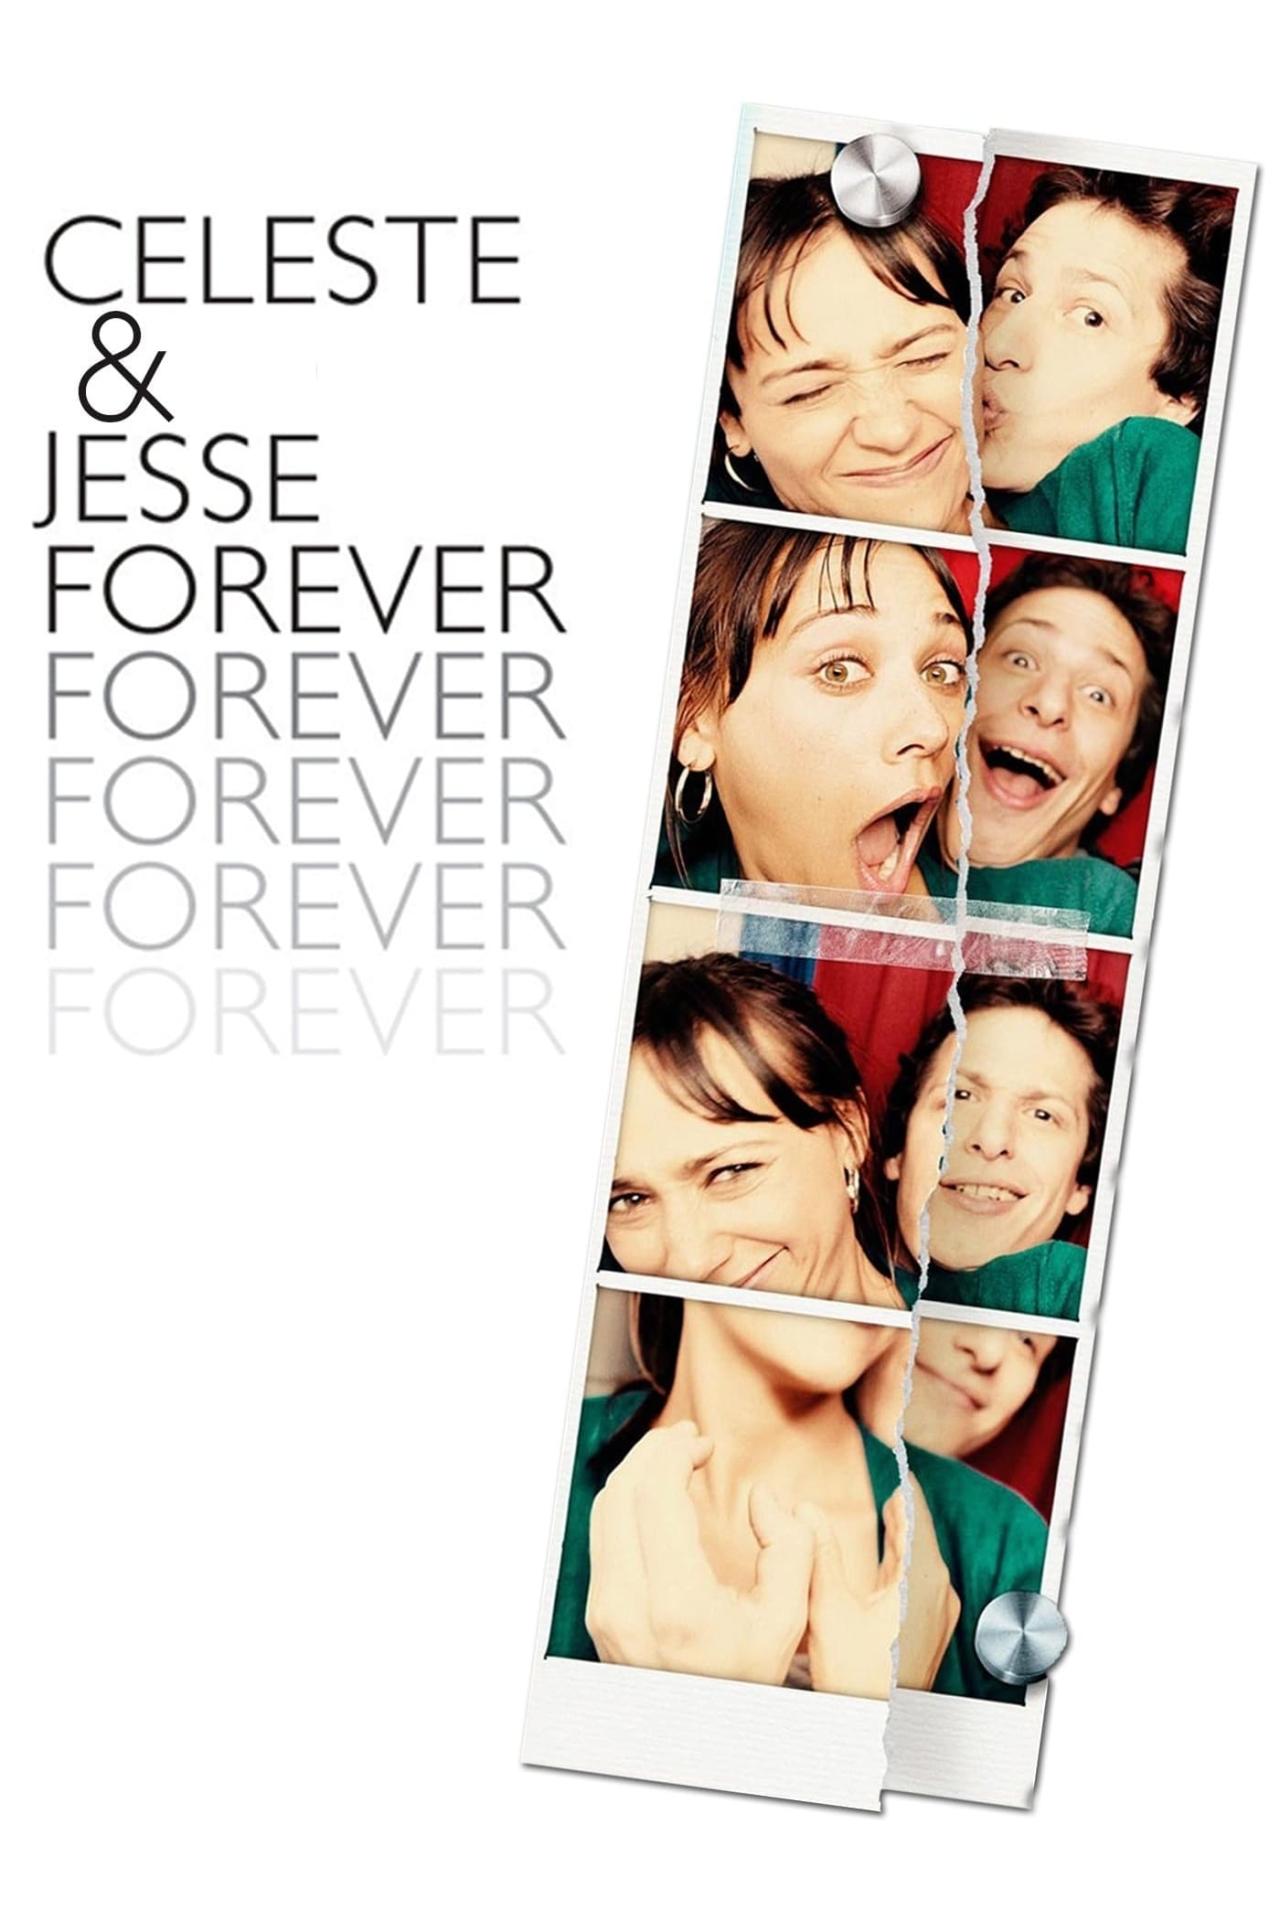 Celeste & Jesse Forever est-il disponible sur Netflix ou autre ?